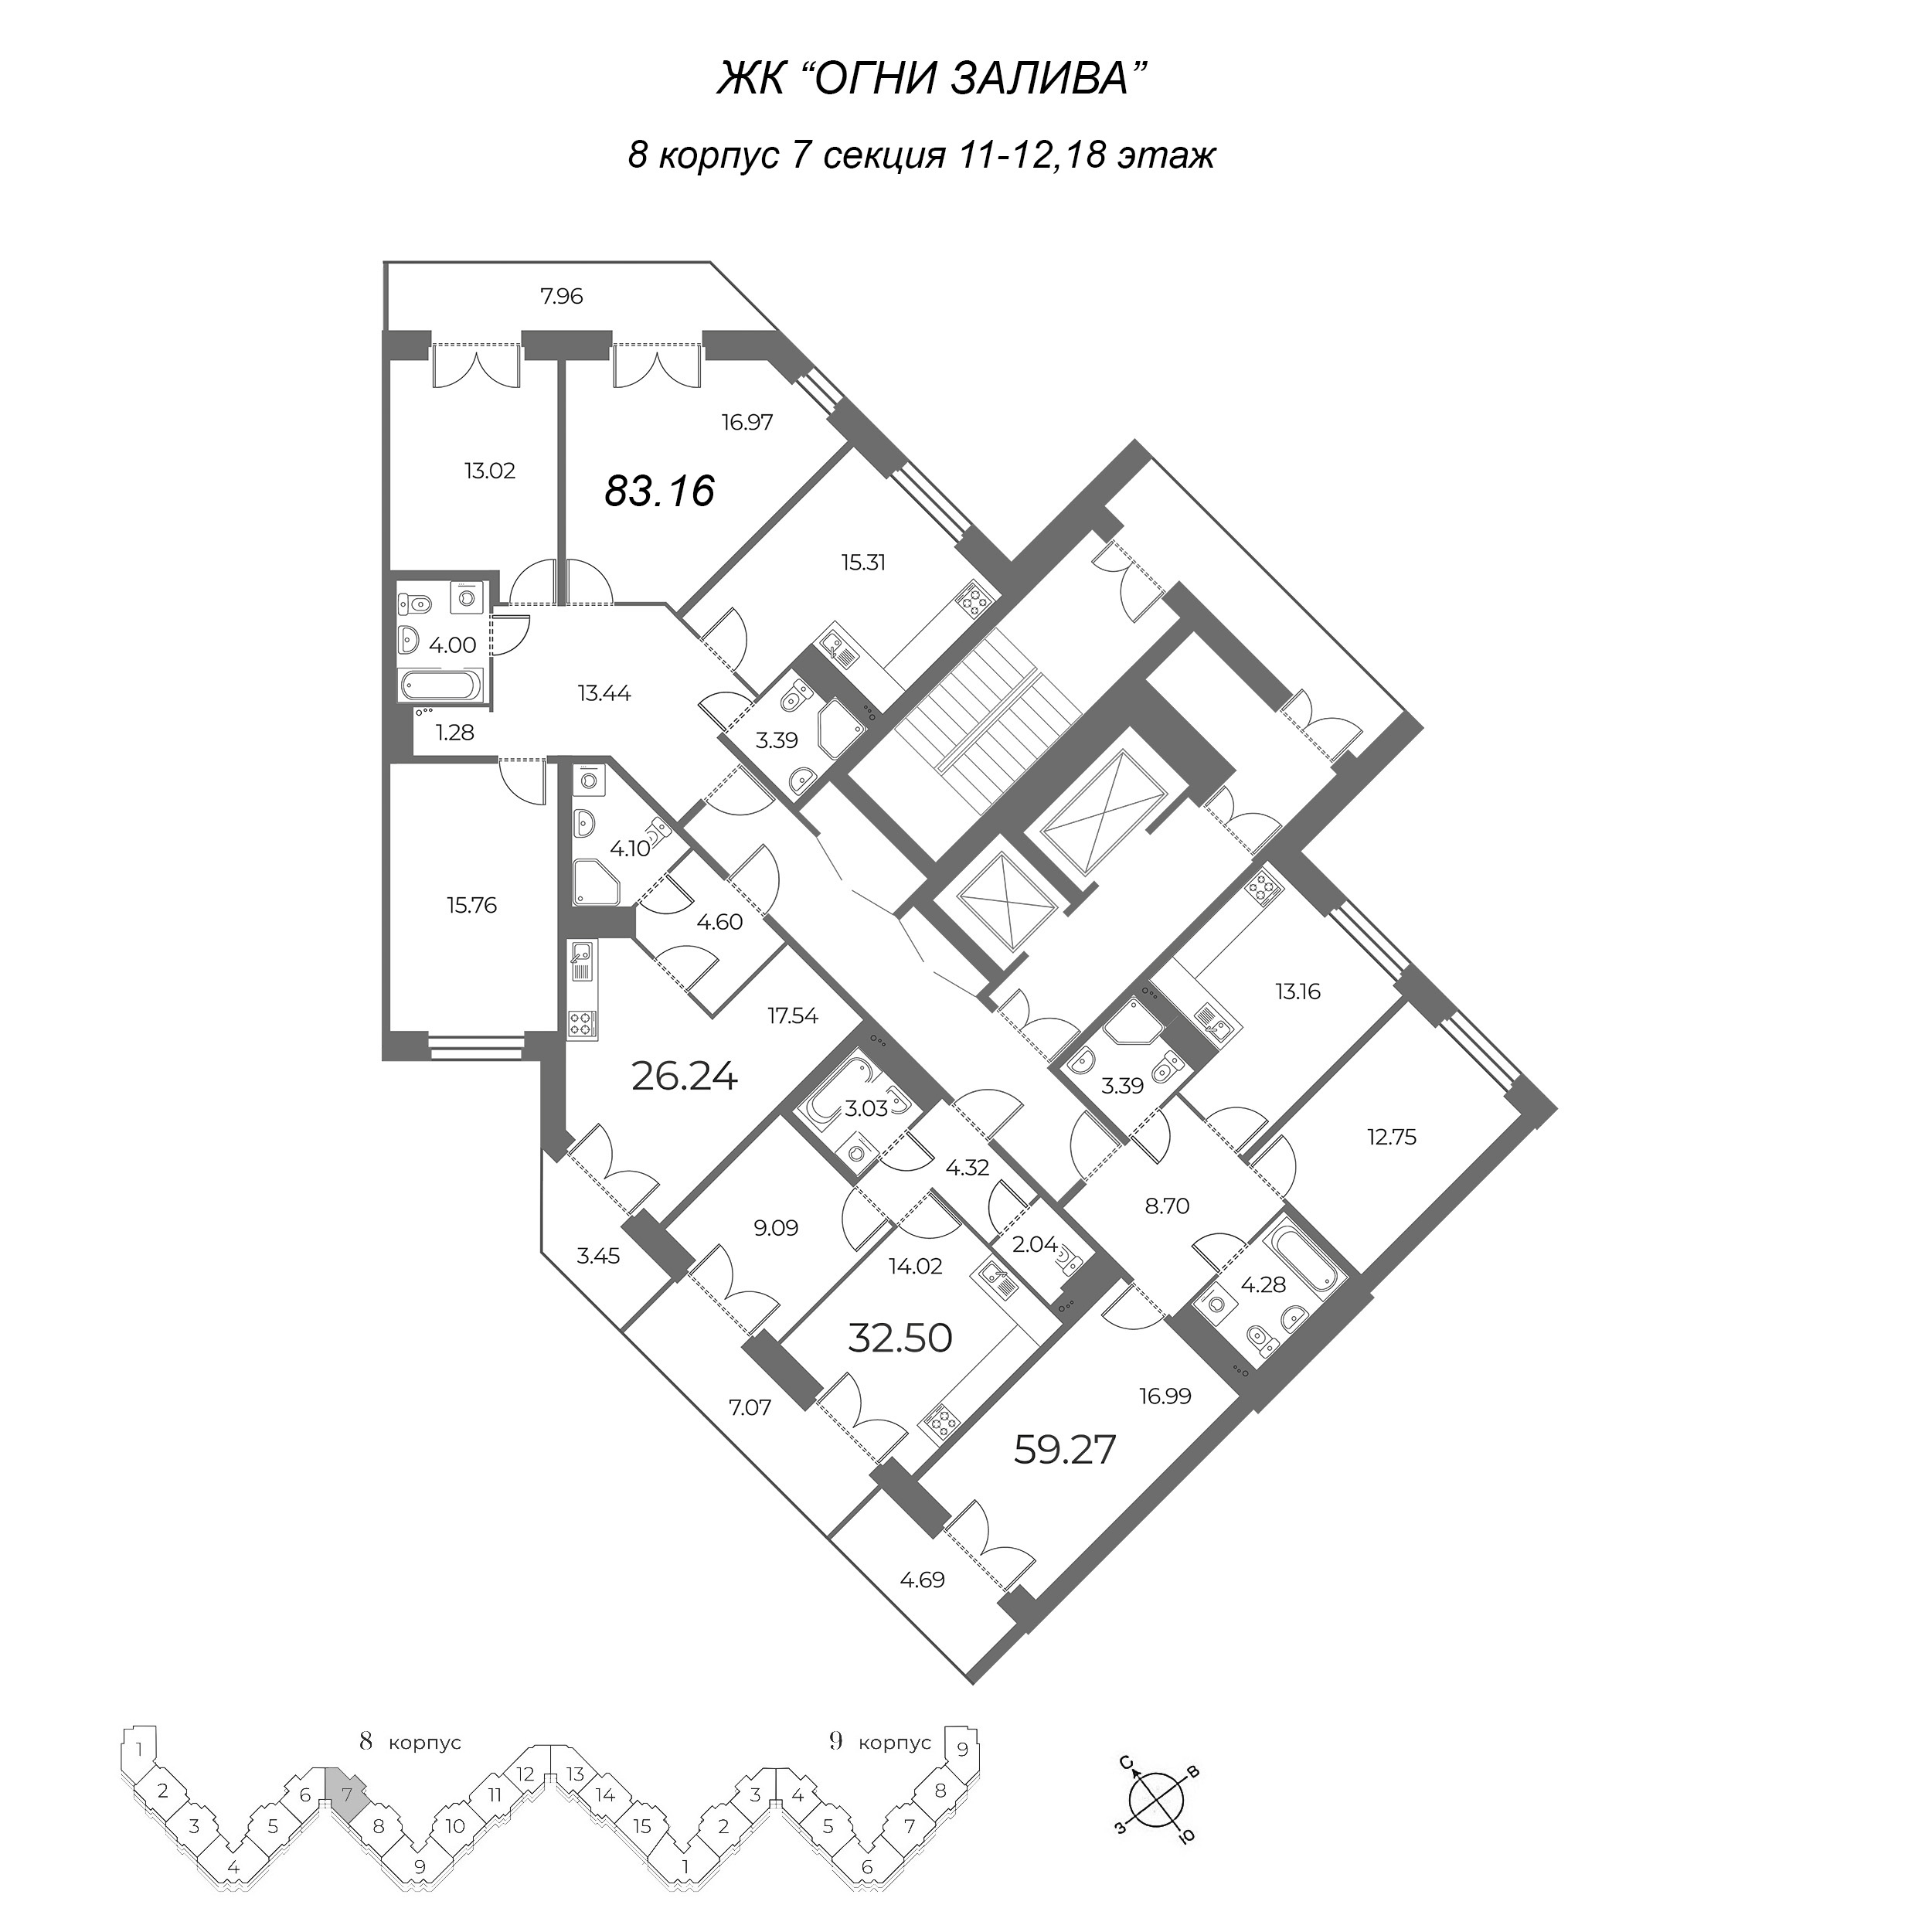 4-комнатная (Евро) квартира, 85.55 м² в ЖК "Огни Залива" - планировка этажа